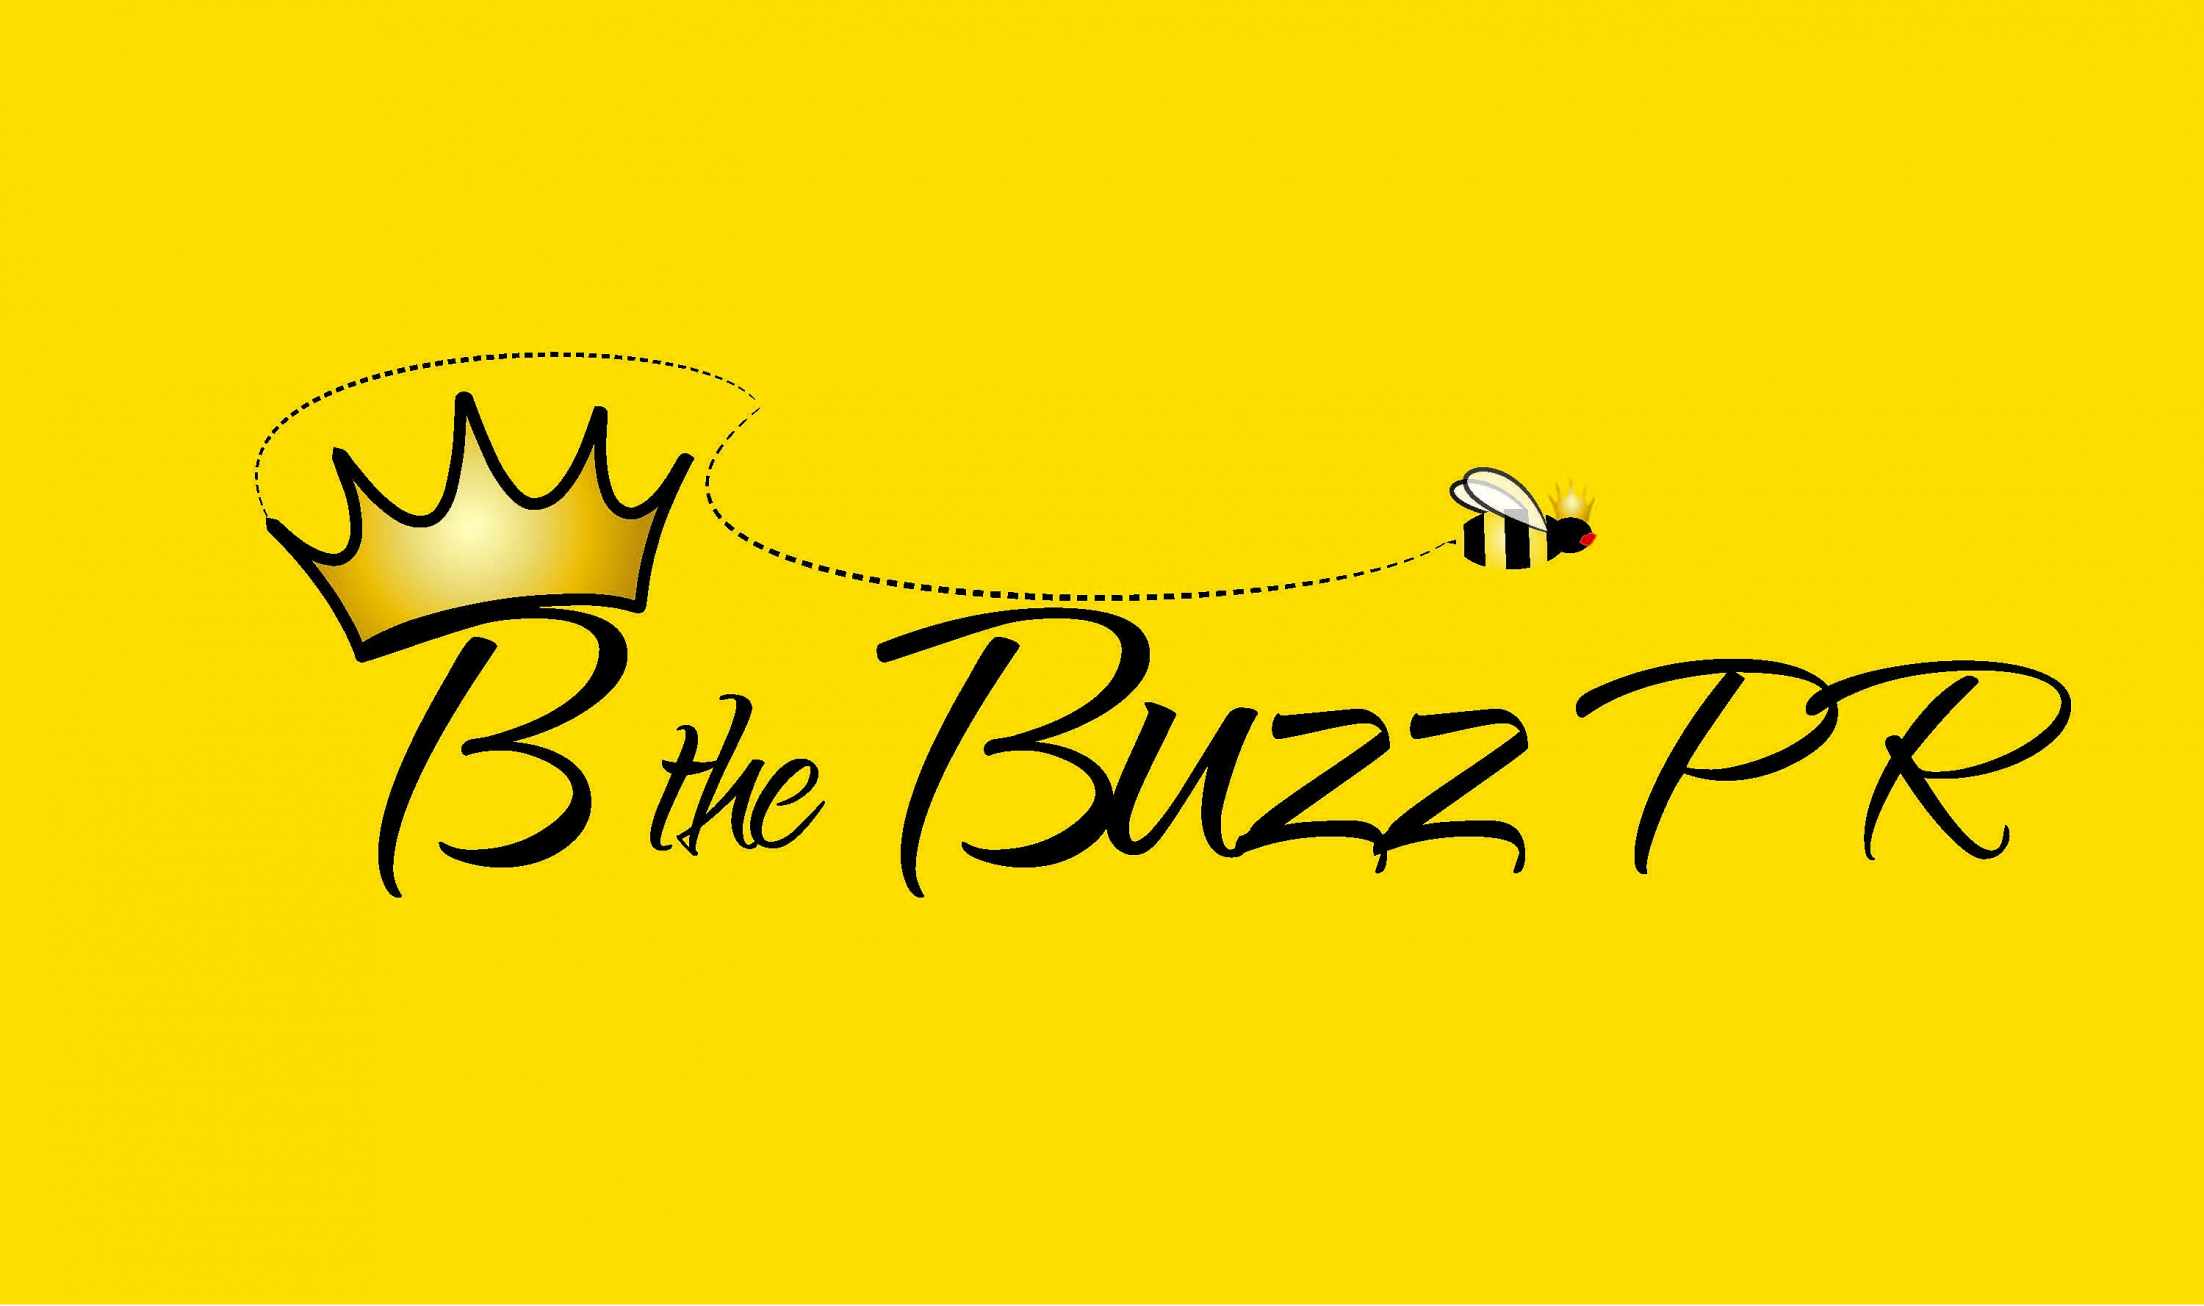 bthebuzzpr Logo